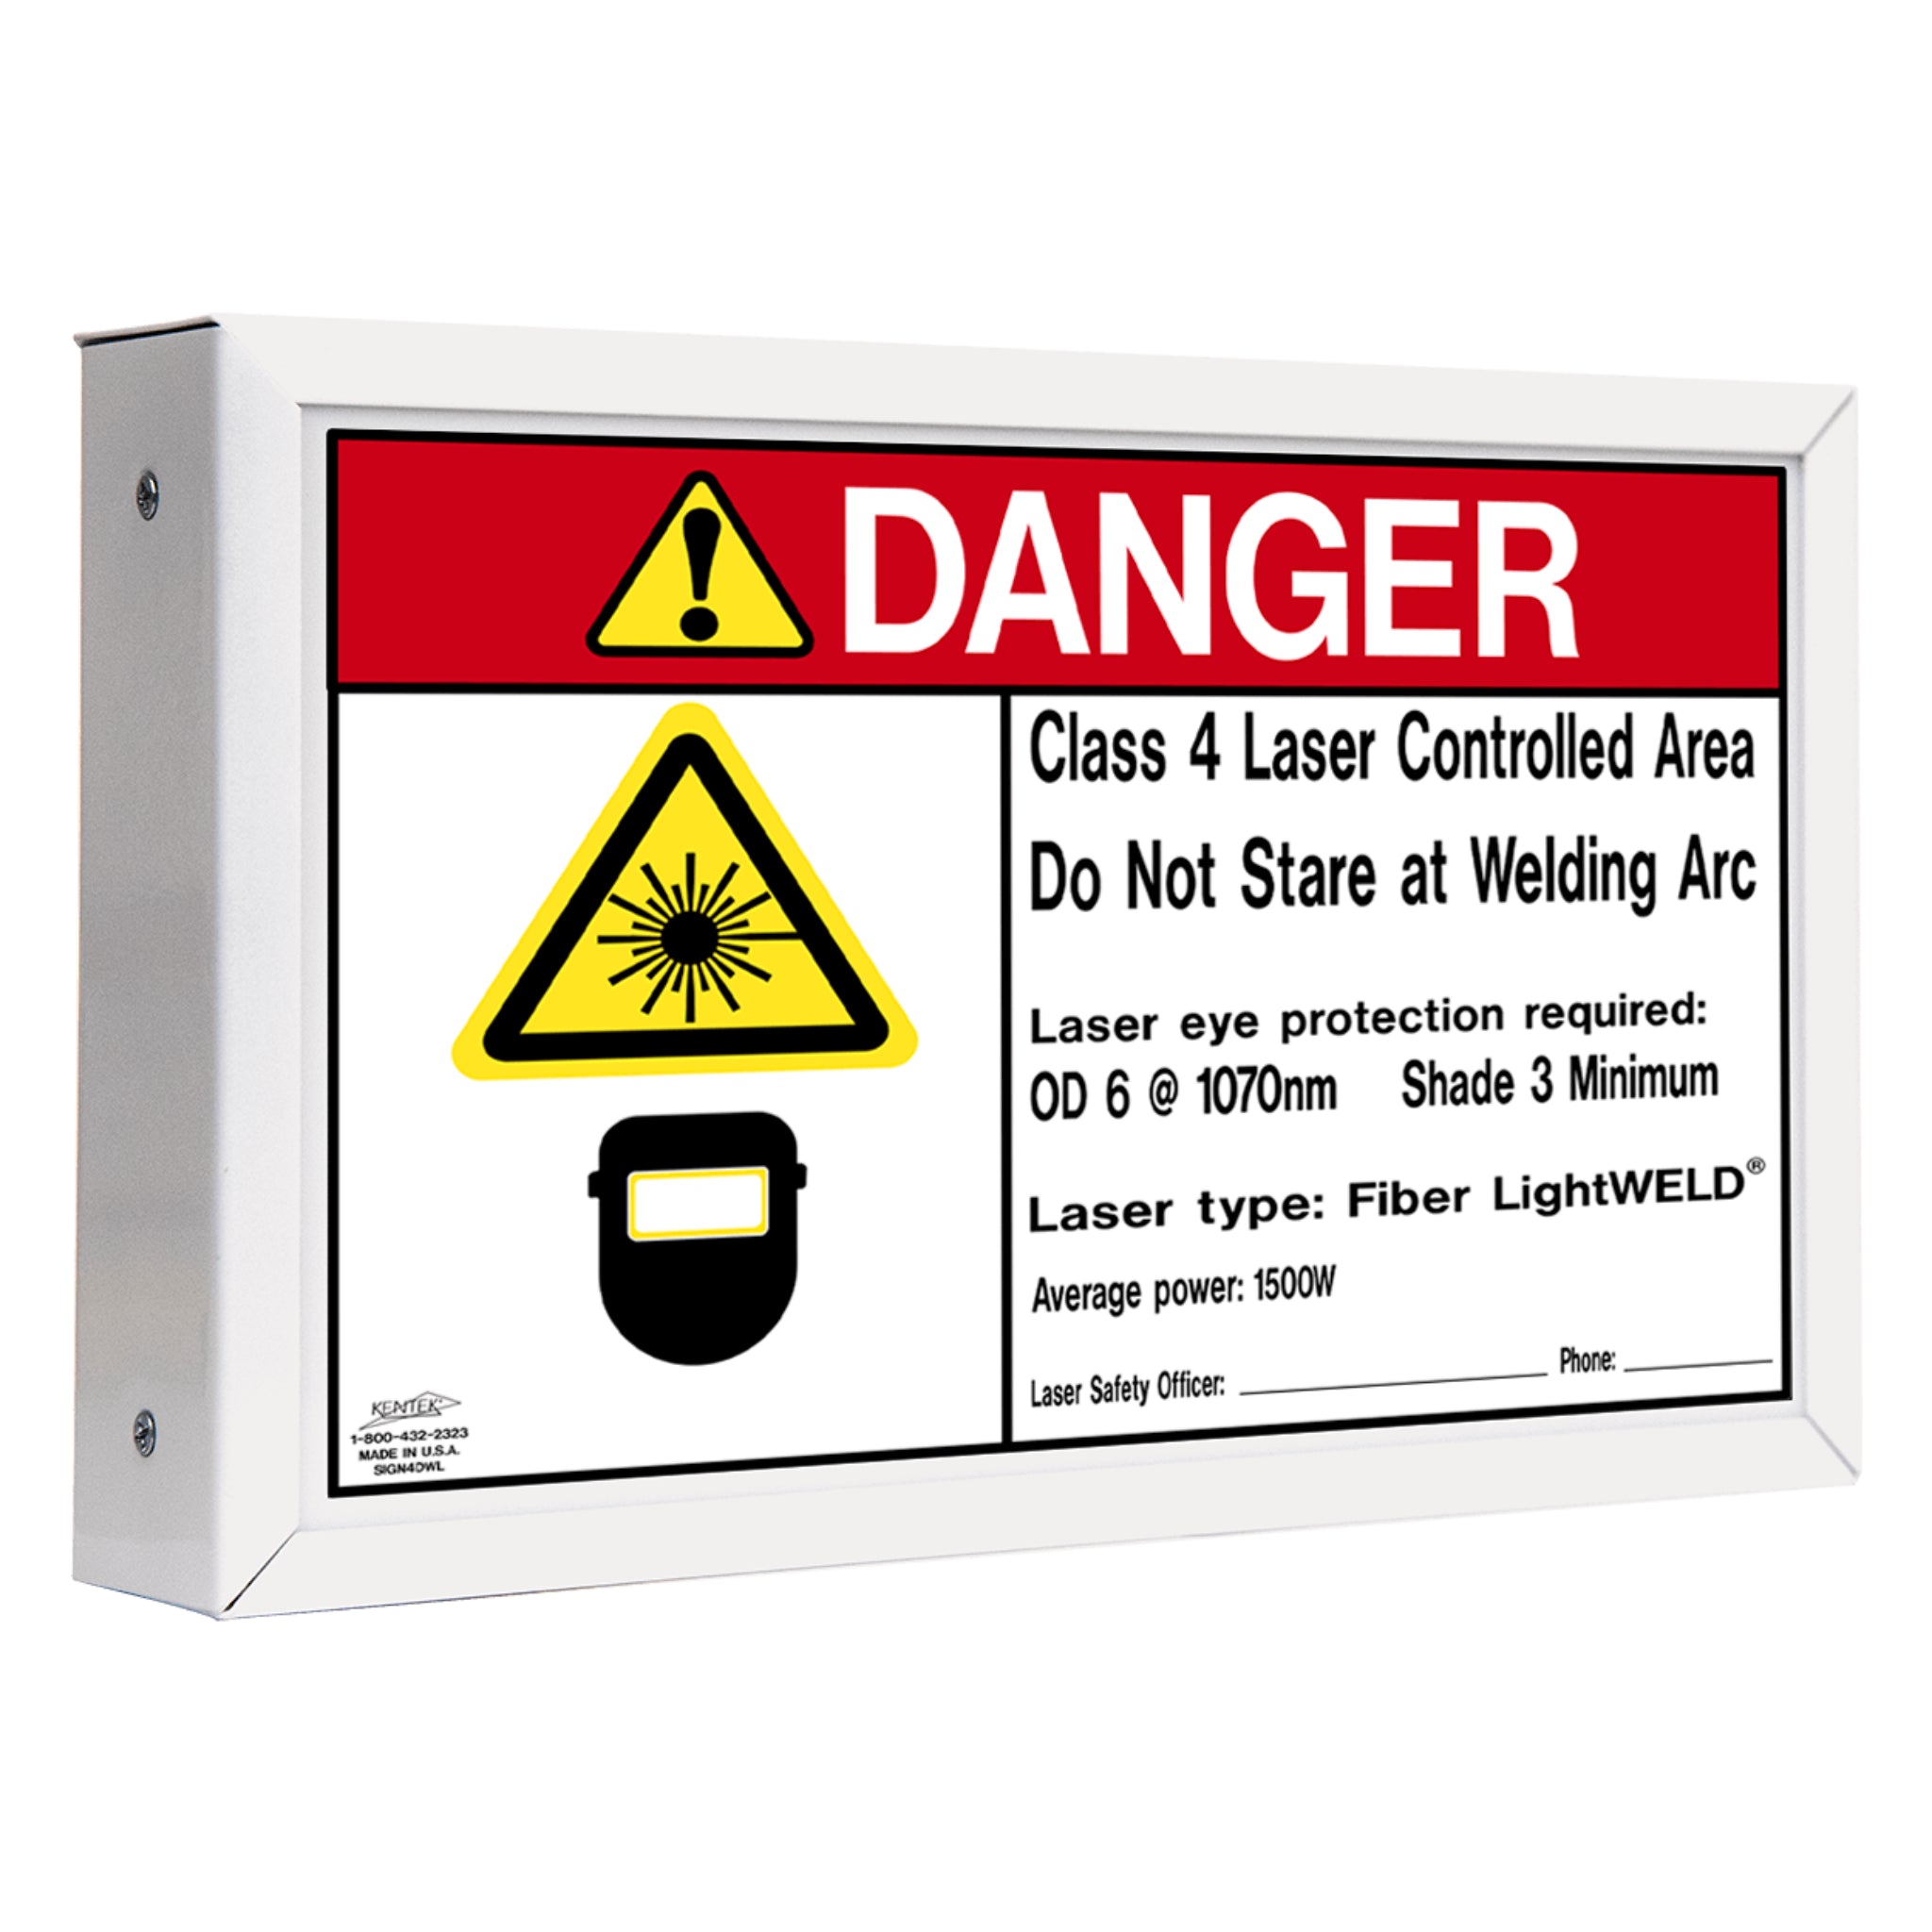 Kentek® Laser Safety SIGN4DW LightWELD® Class 4 Laser Welding Danger Sign, 1 Each